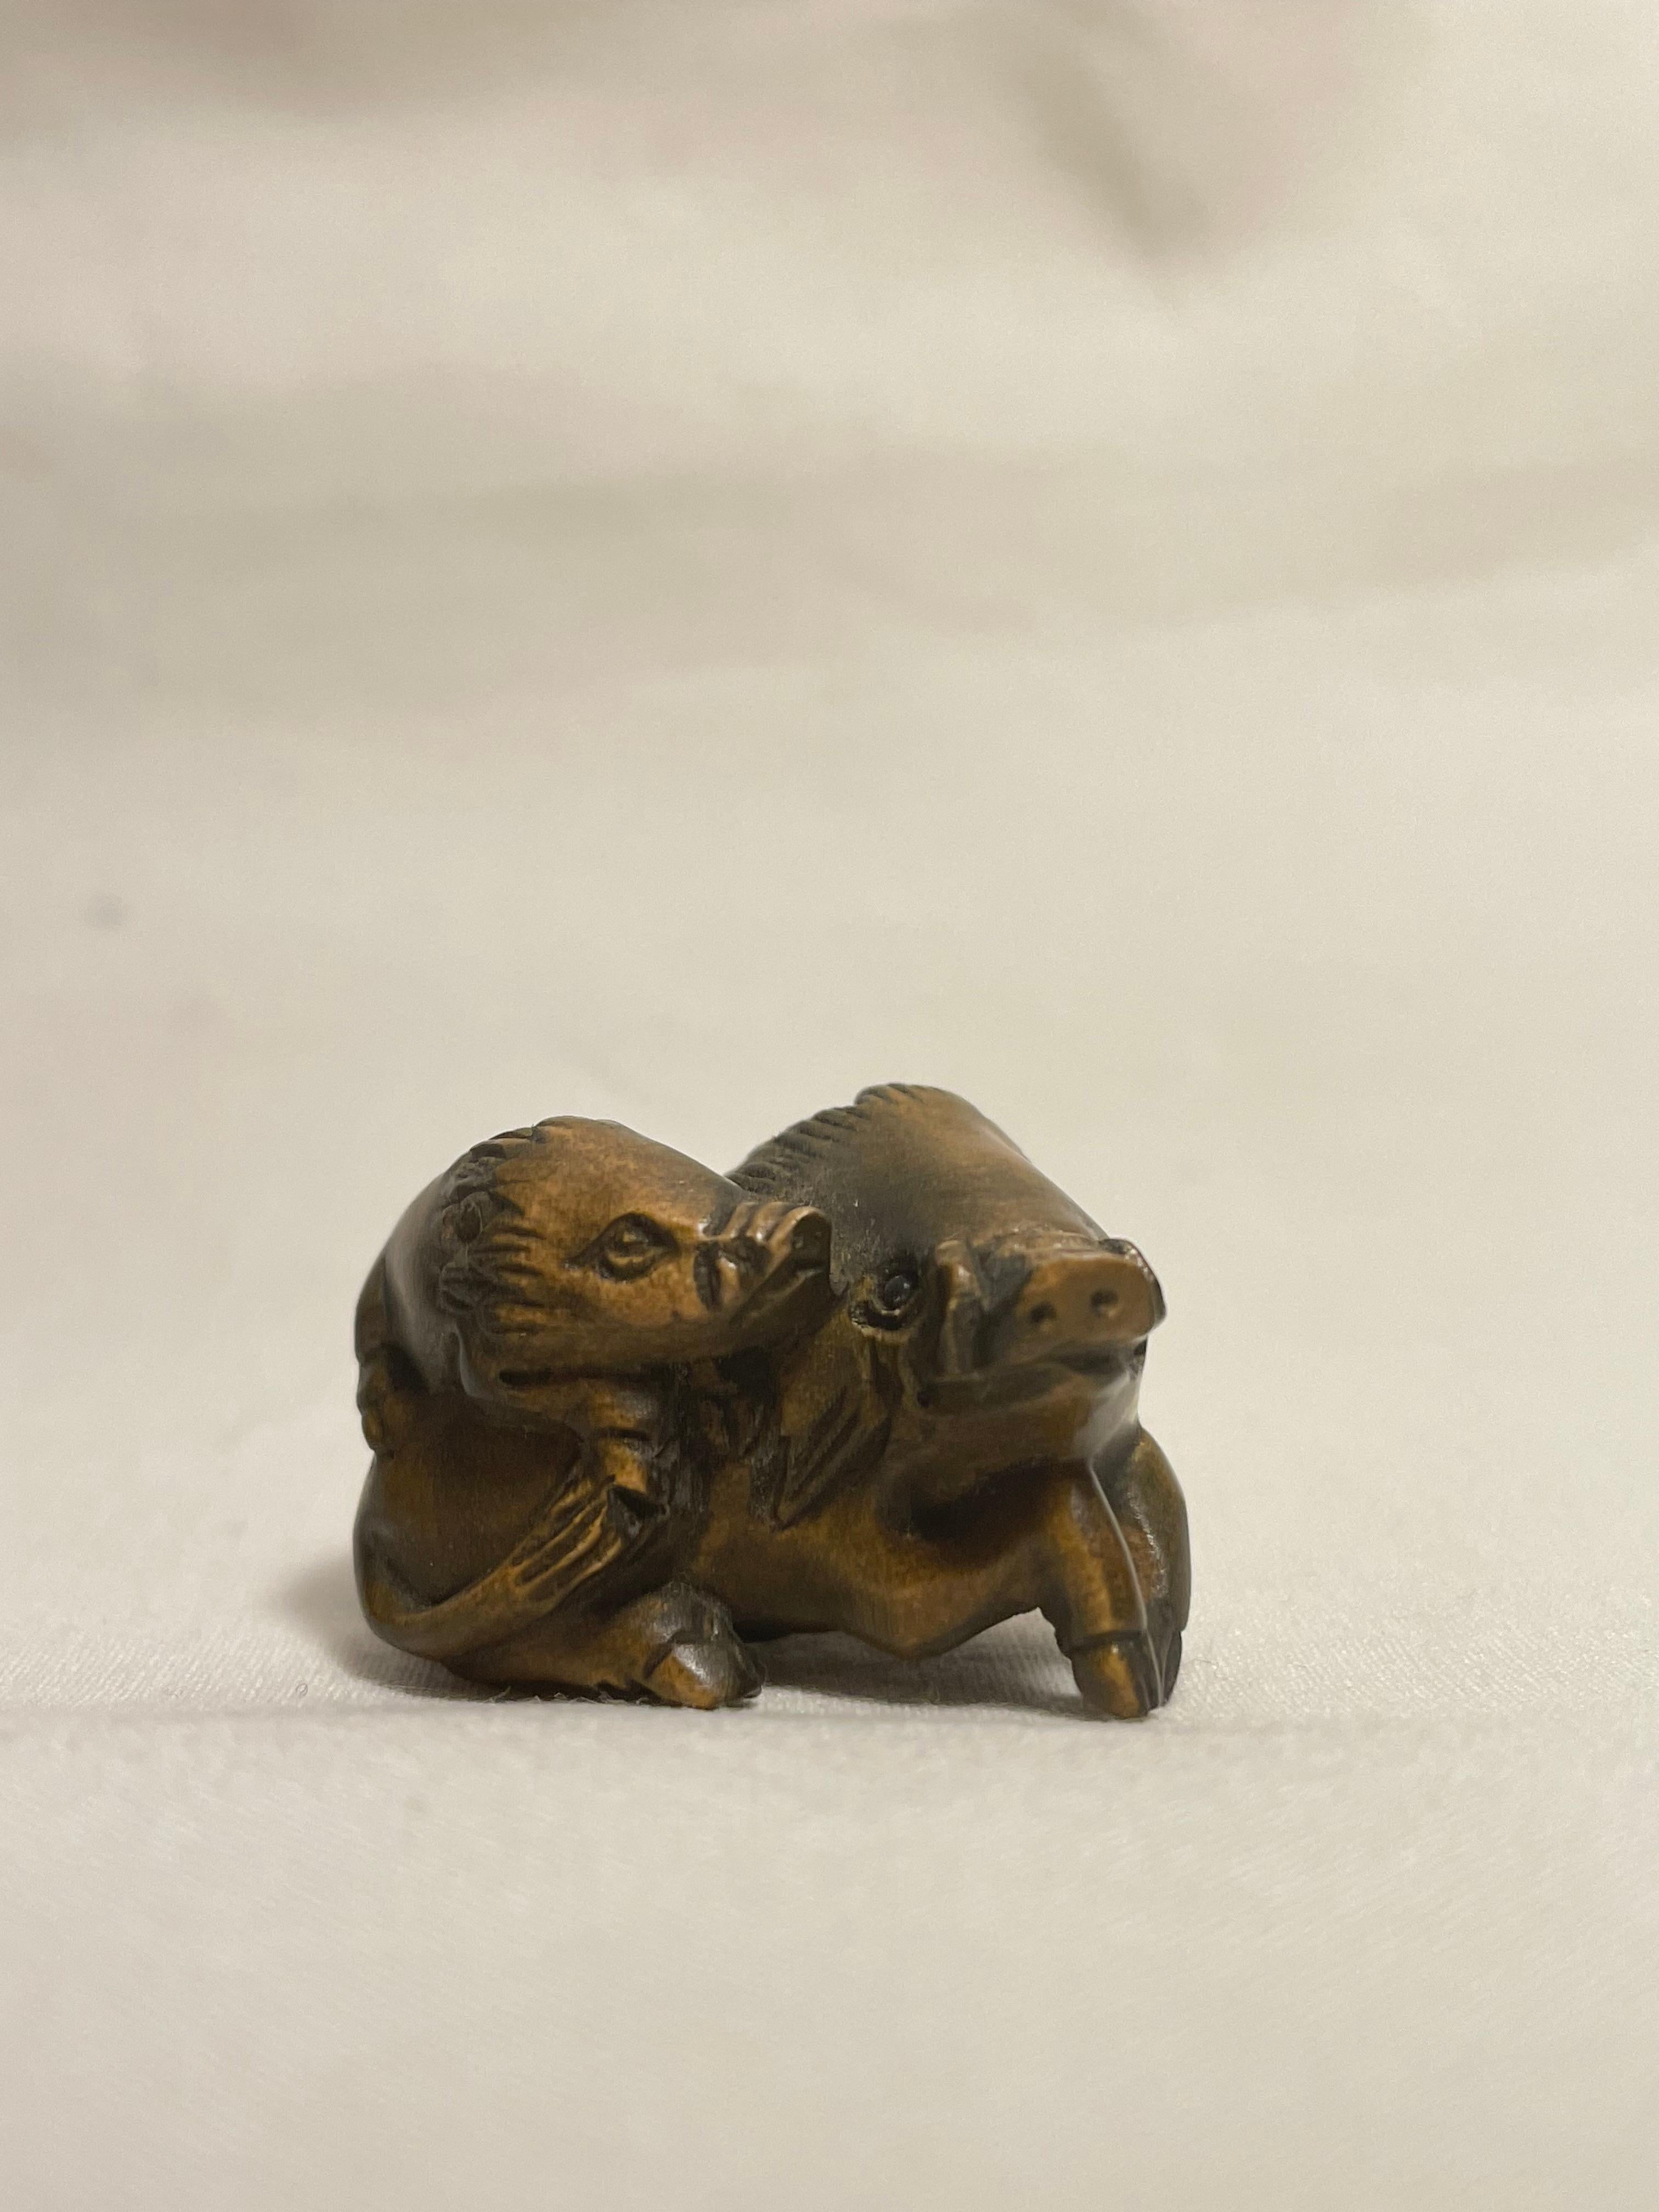 Dies ist ein antikes Netsuke, das in Japan um die Showa-Periode der 1960er Jahre hergestellt wurde.

Abmessungen: 2,5 x 2,3 x H2 cm
Bildhauerei: Wildschwein
Epoche: 1960er Jahre (Showa) 

Netsuke sind Miniaturskulpturen, die ihren Ursprung im Japan